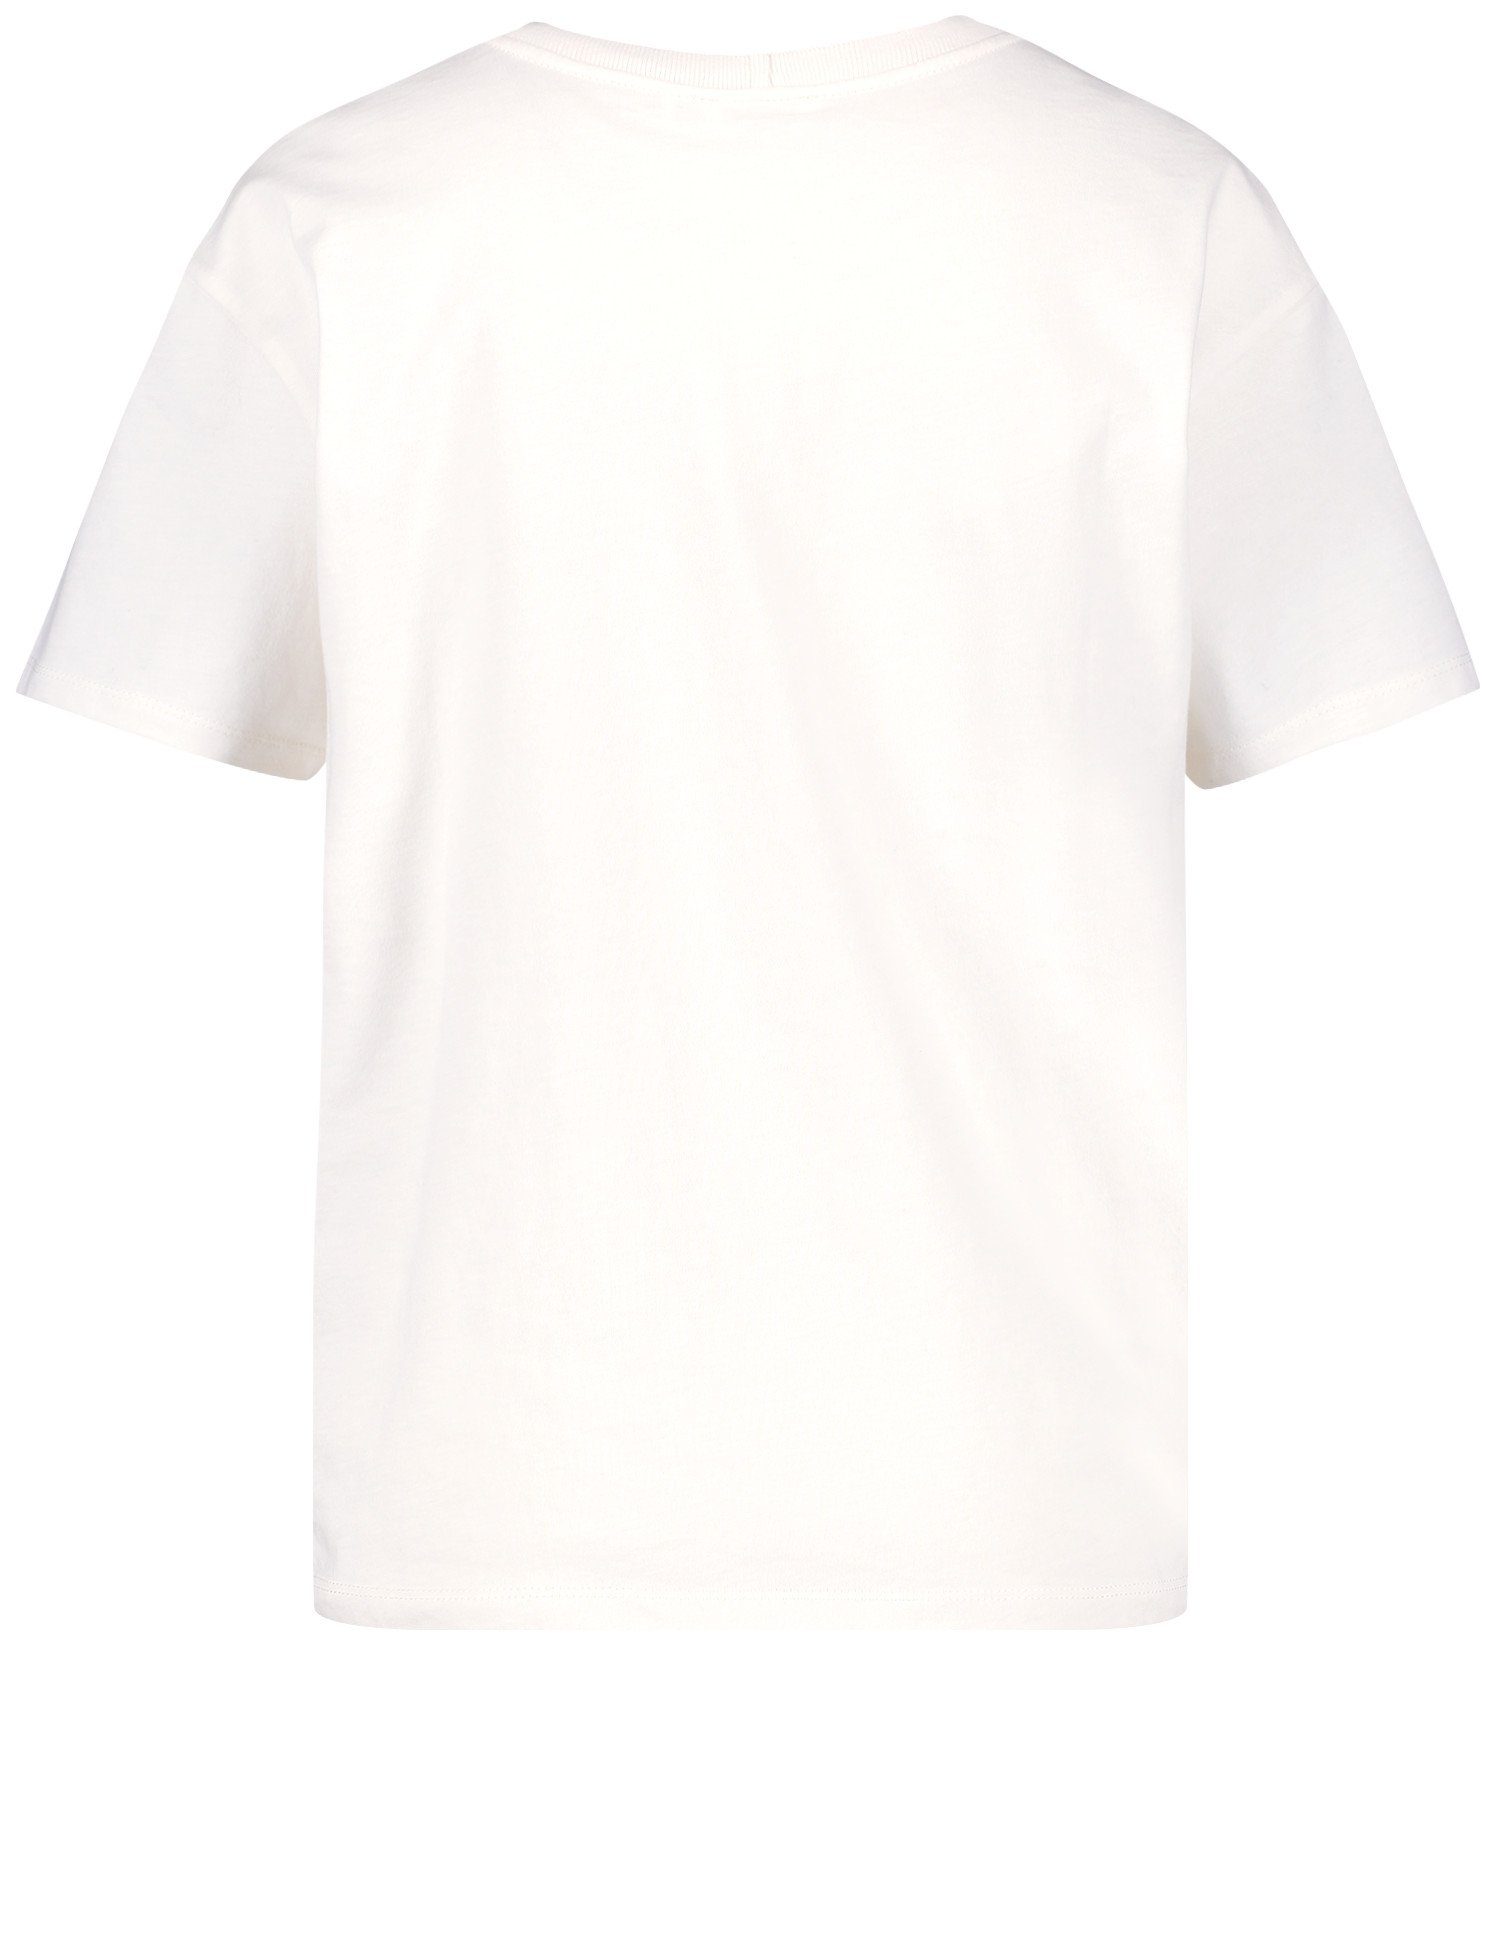 Kurzarmshirt GERRY GOTS WEBER Shirt mit Frontdruck Powder